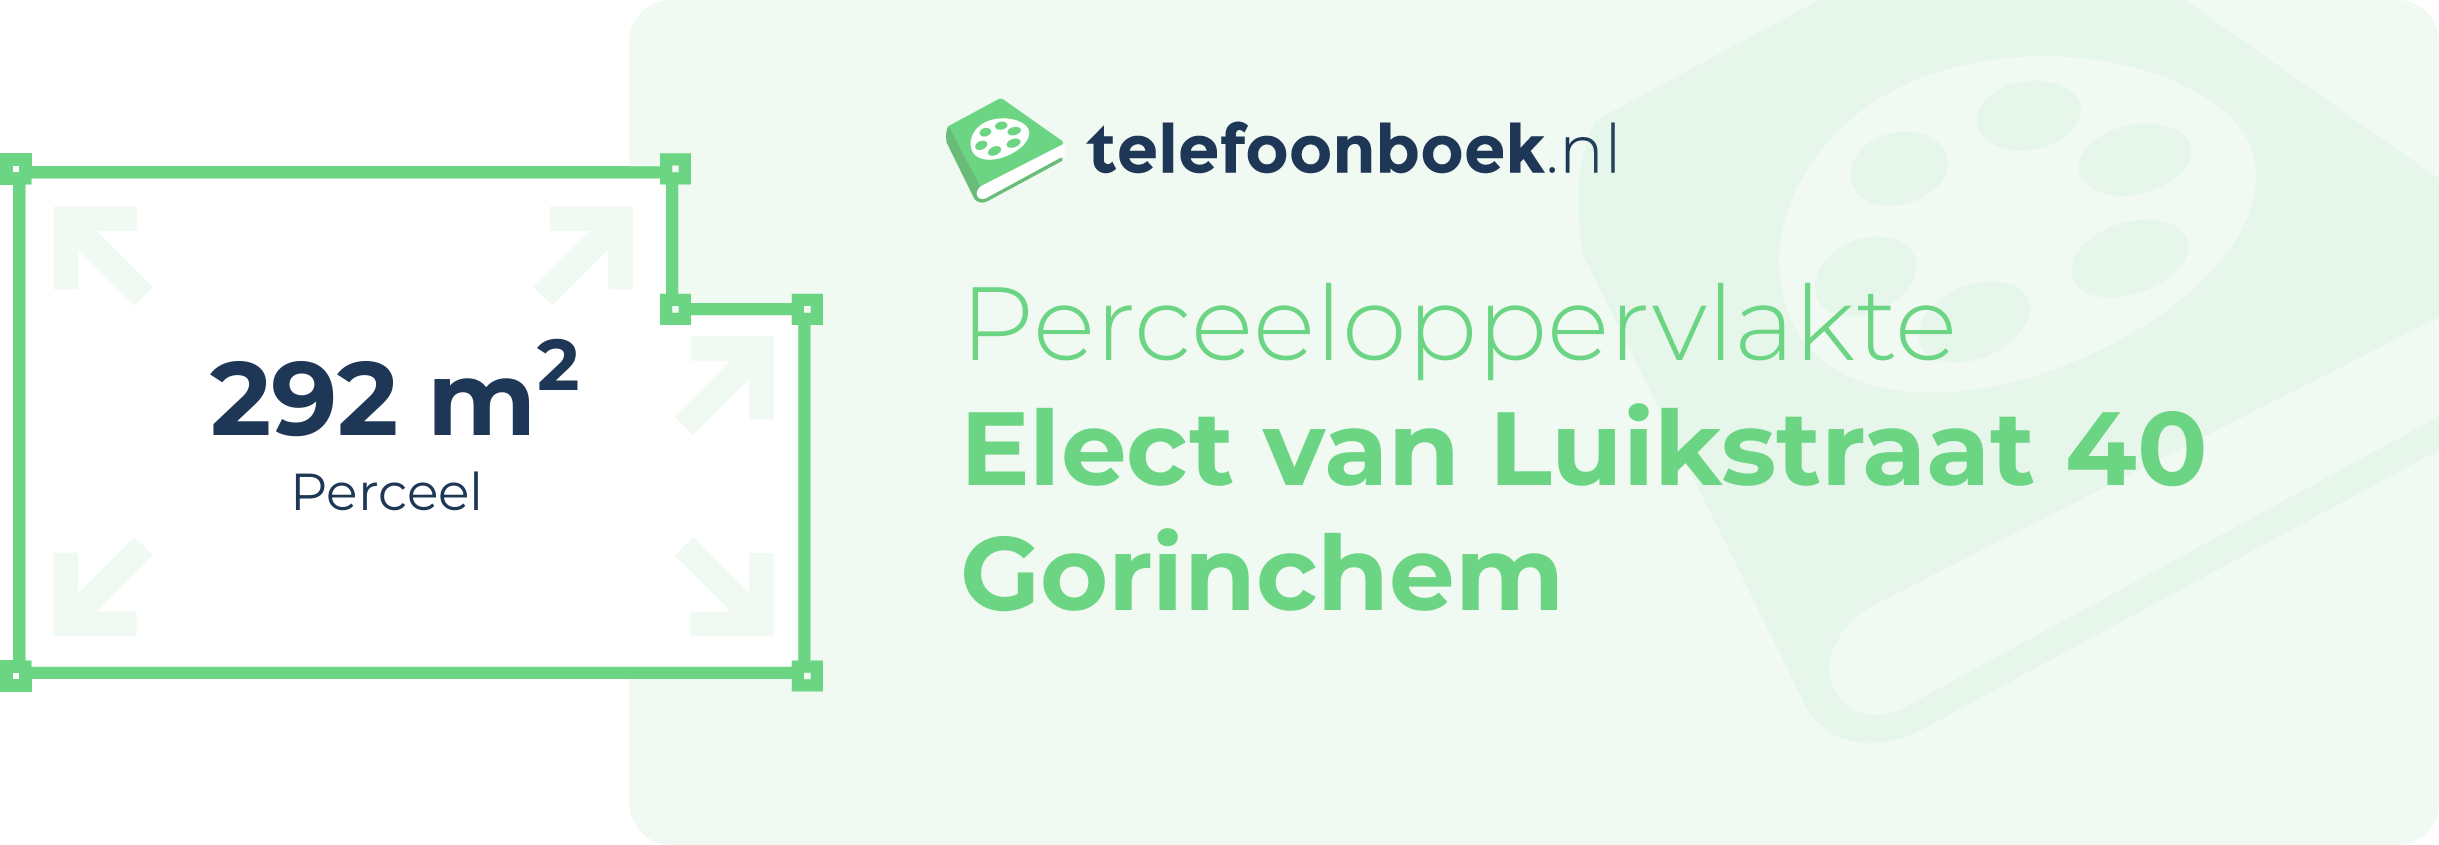 Perceeloppervlakte Elect Van Luikstraat 40 Gorinchem